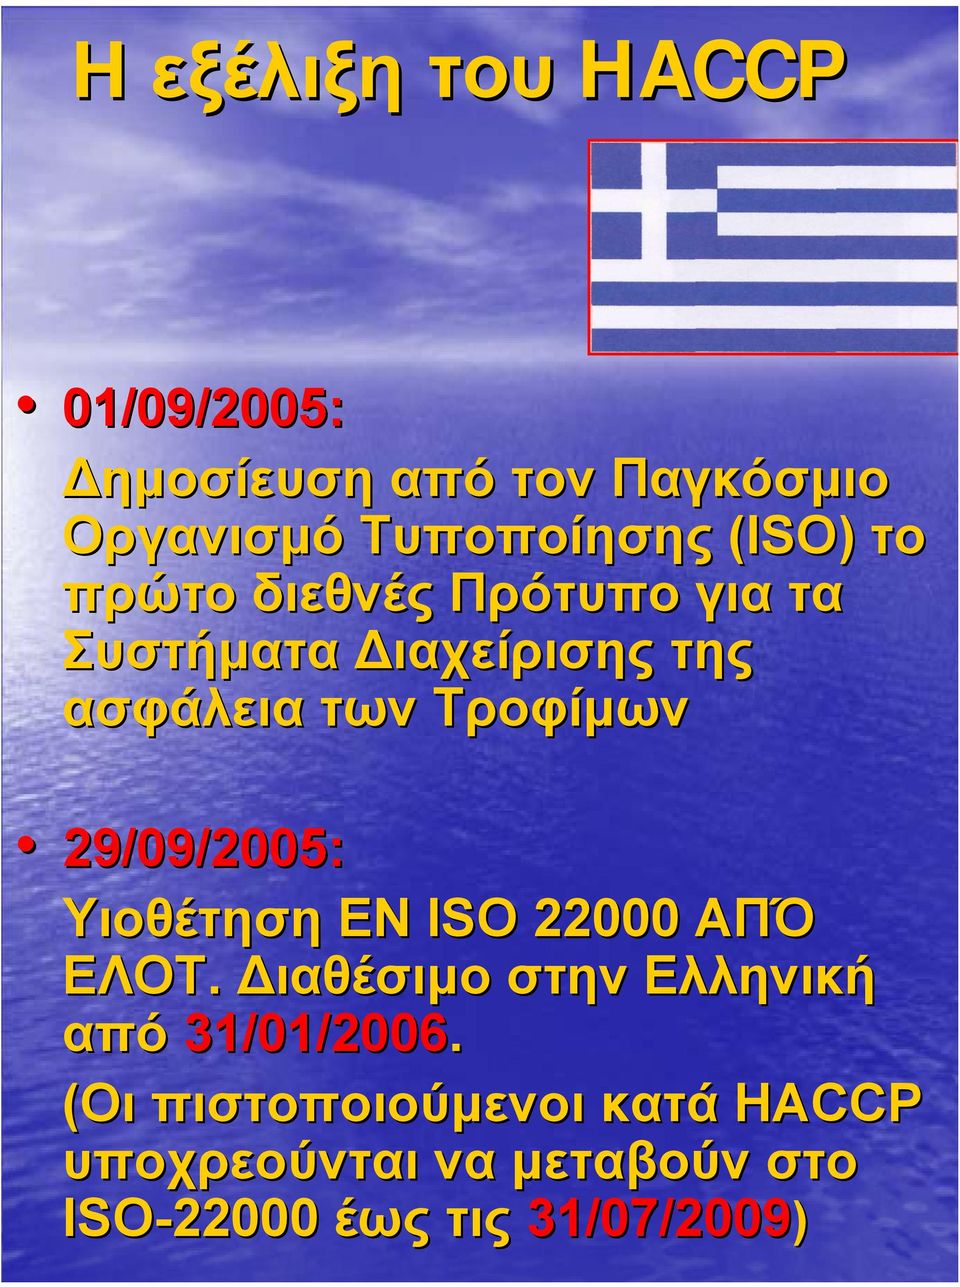 29/09/2005: Υιοθέτηση ΕΝ ISO 22000 ΑΠΌ ΕΛΟΤ. ιαθέσιµο στην Ελληνική από 31/01/2006.